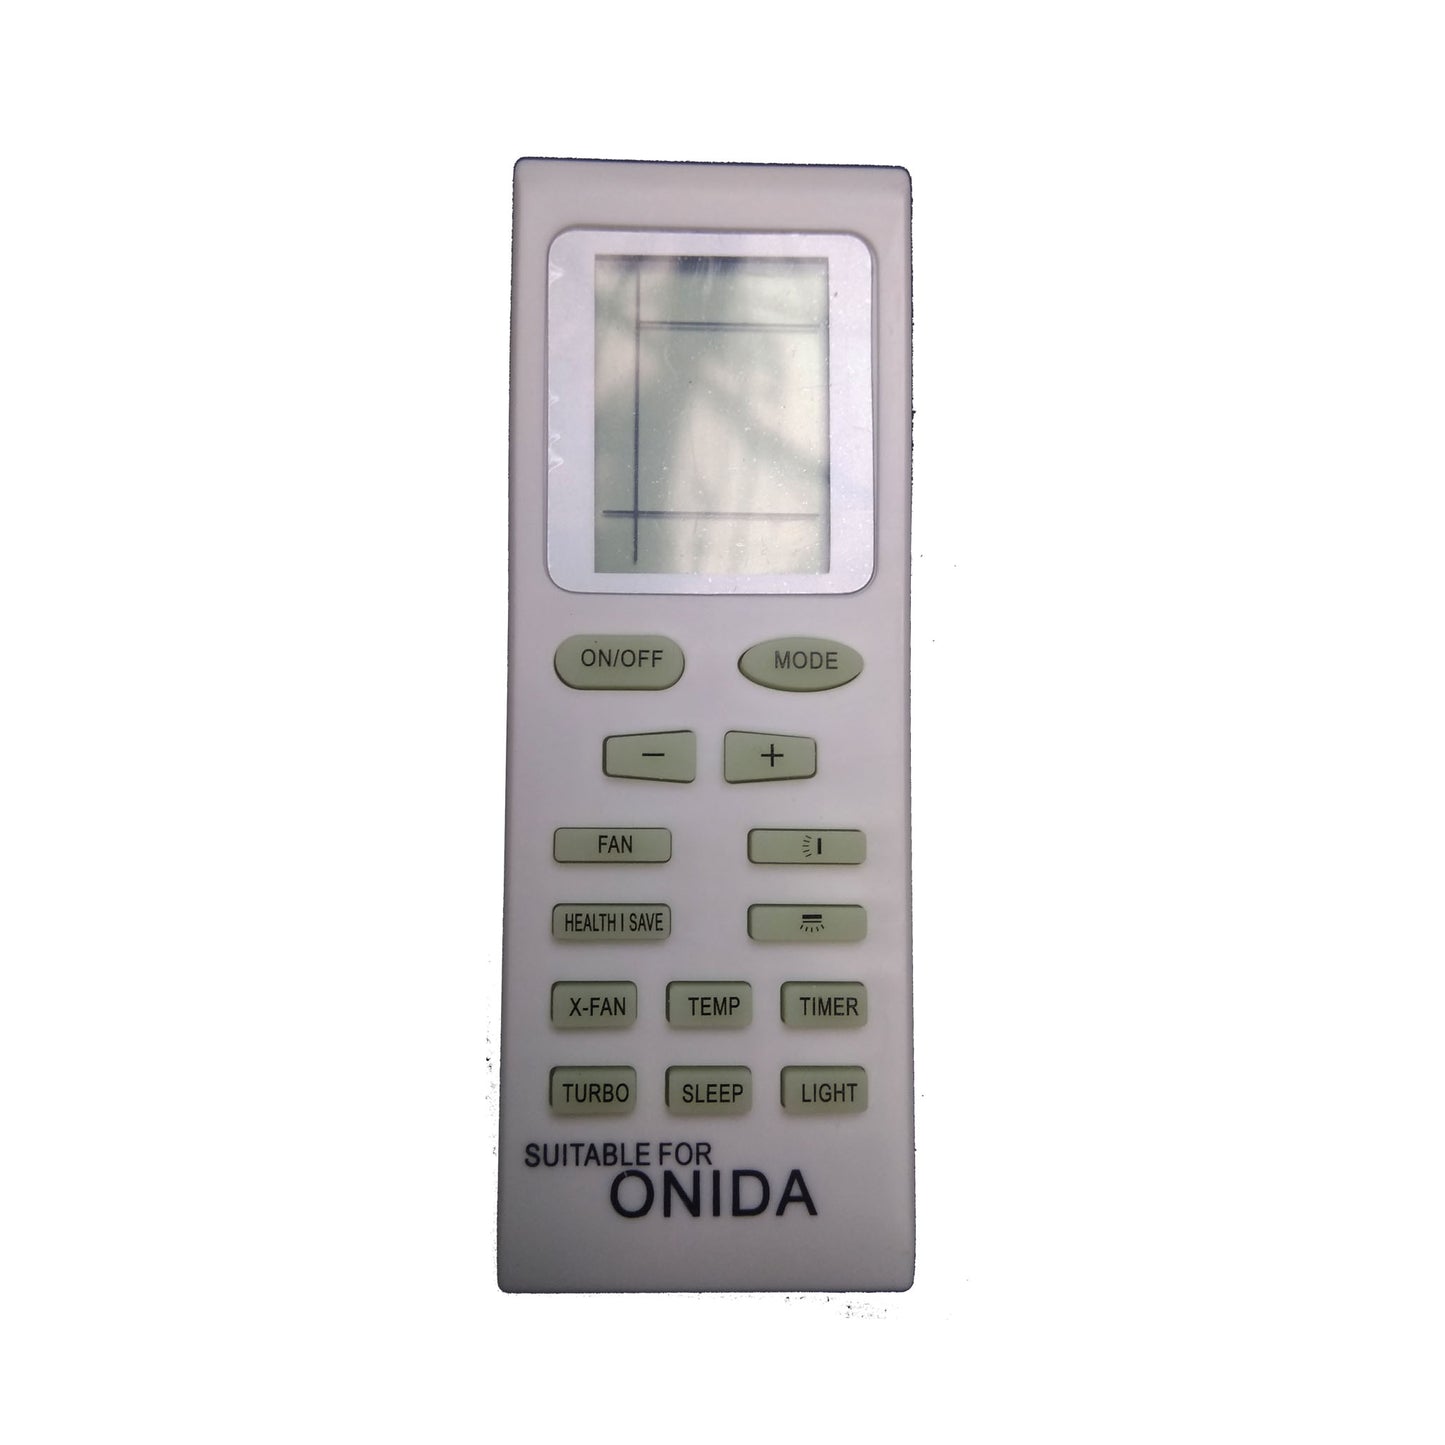 Onida Aircondition Remote Control - Faritha